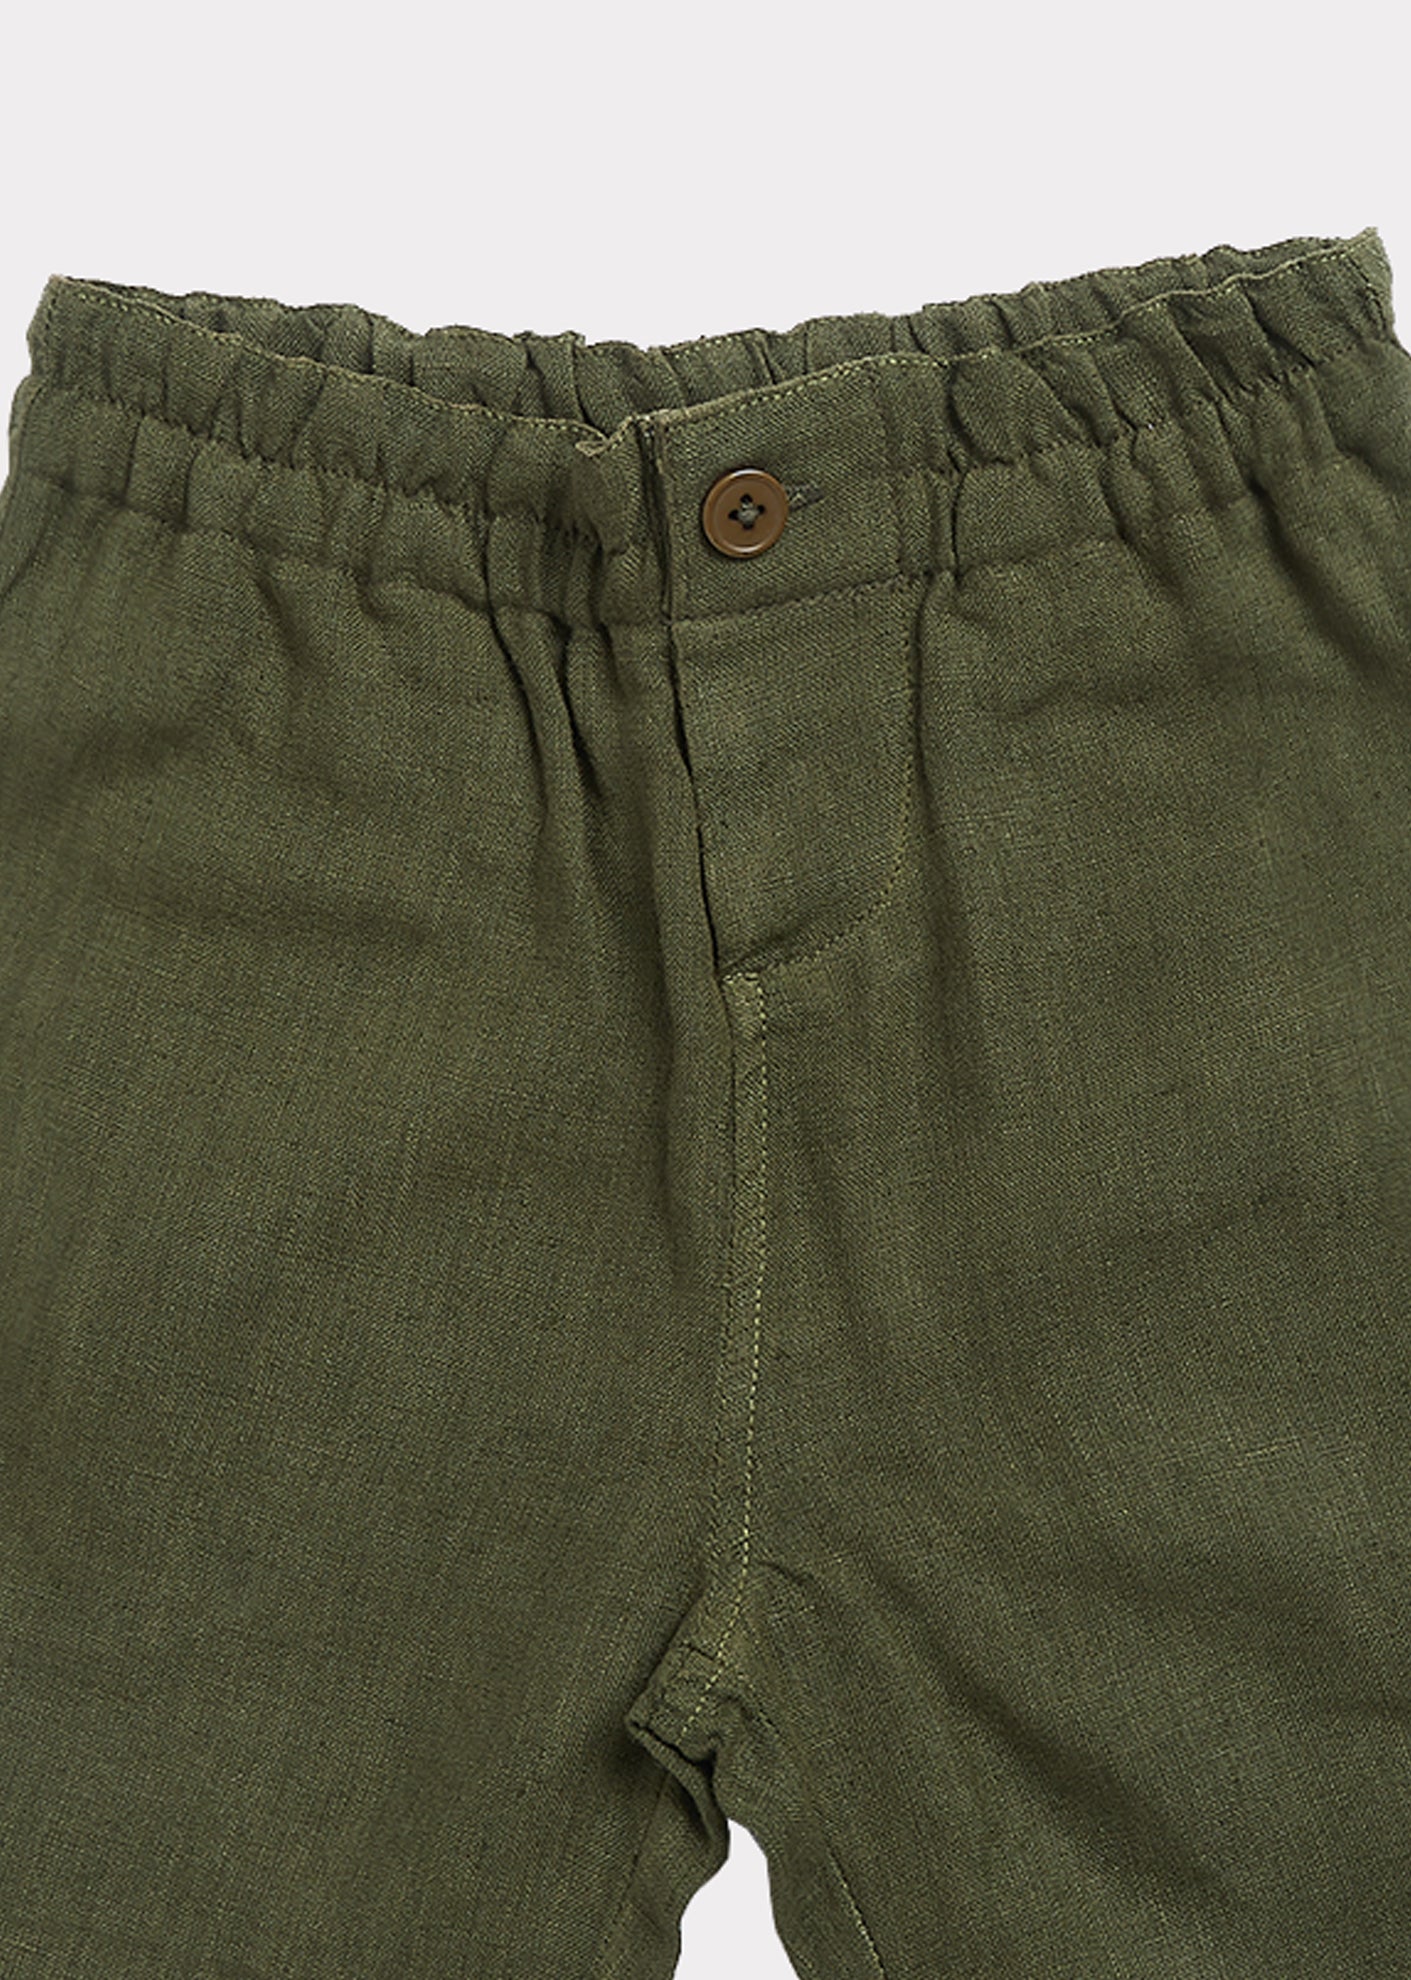 Boys & Girls Army Green Shorts